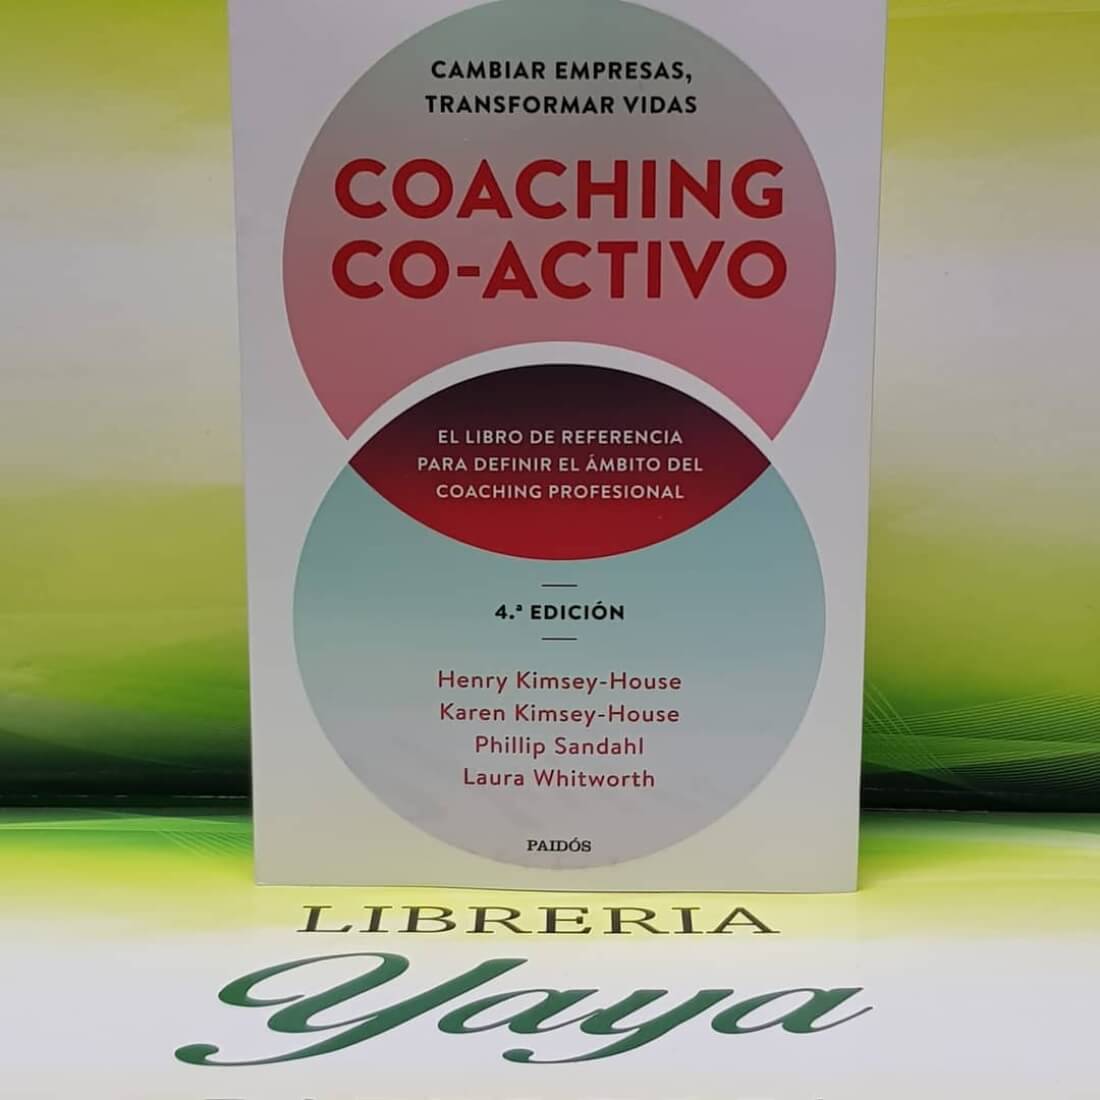 Los 10 mejores libros de Coaching.